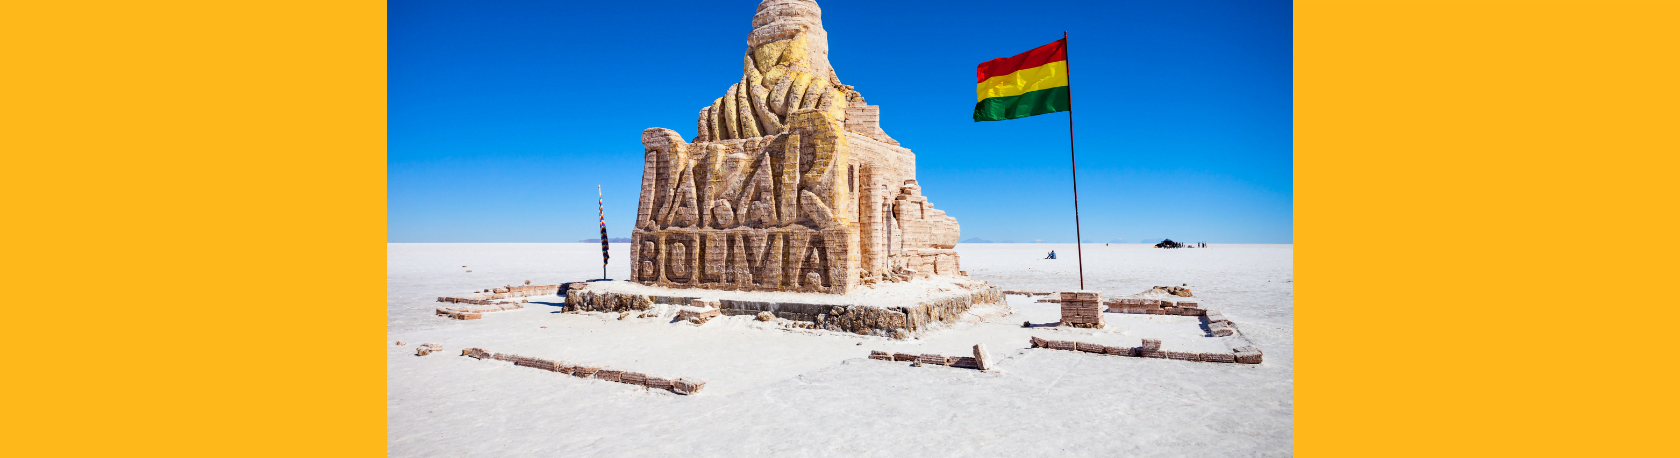 ¿Sabías que el Salar de Uyumi en Bolivia es el mayor desierto de sal del mundo? - Easy Español